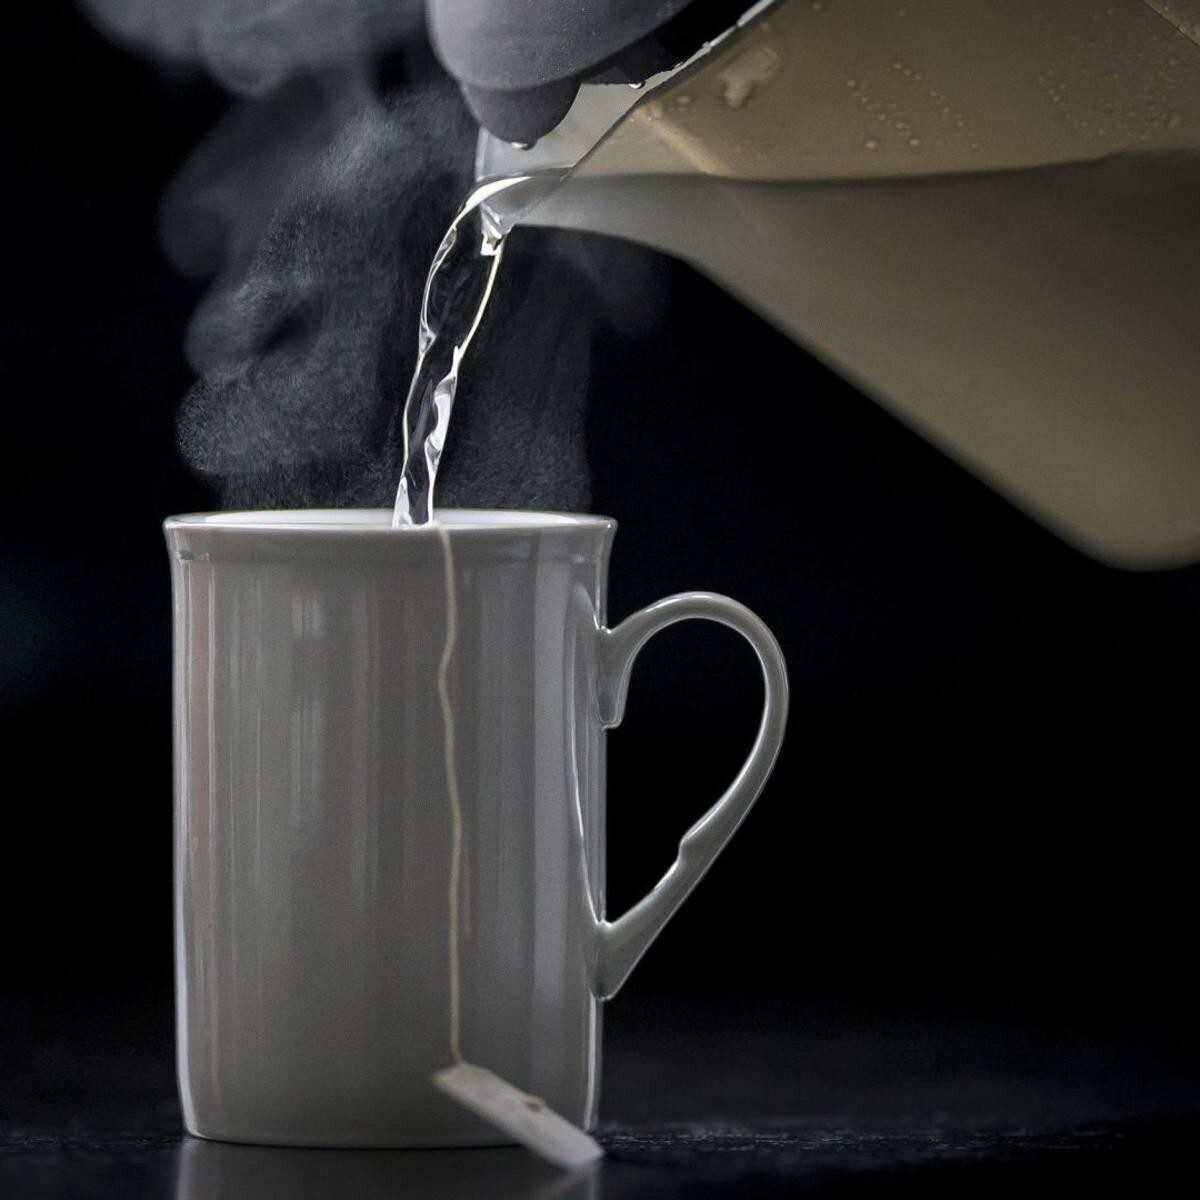 Uống trà quá nóng tăng gấp đôi nguy cơ ung thư thực quản